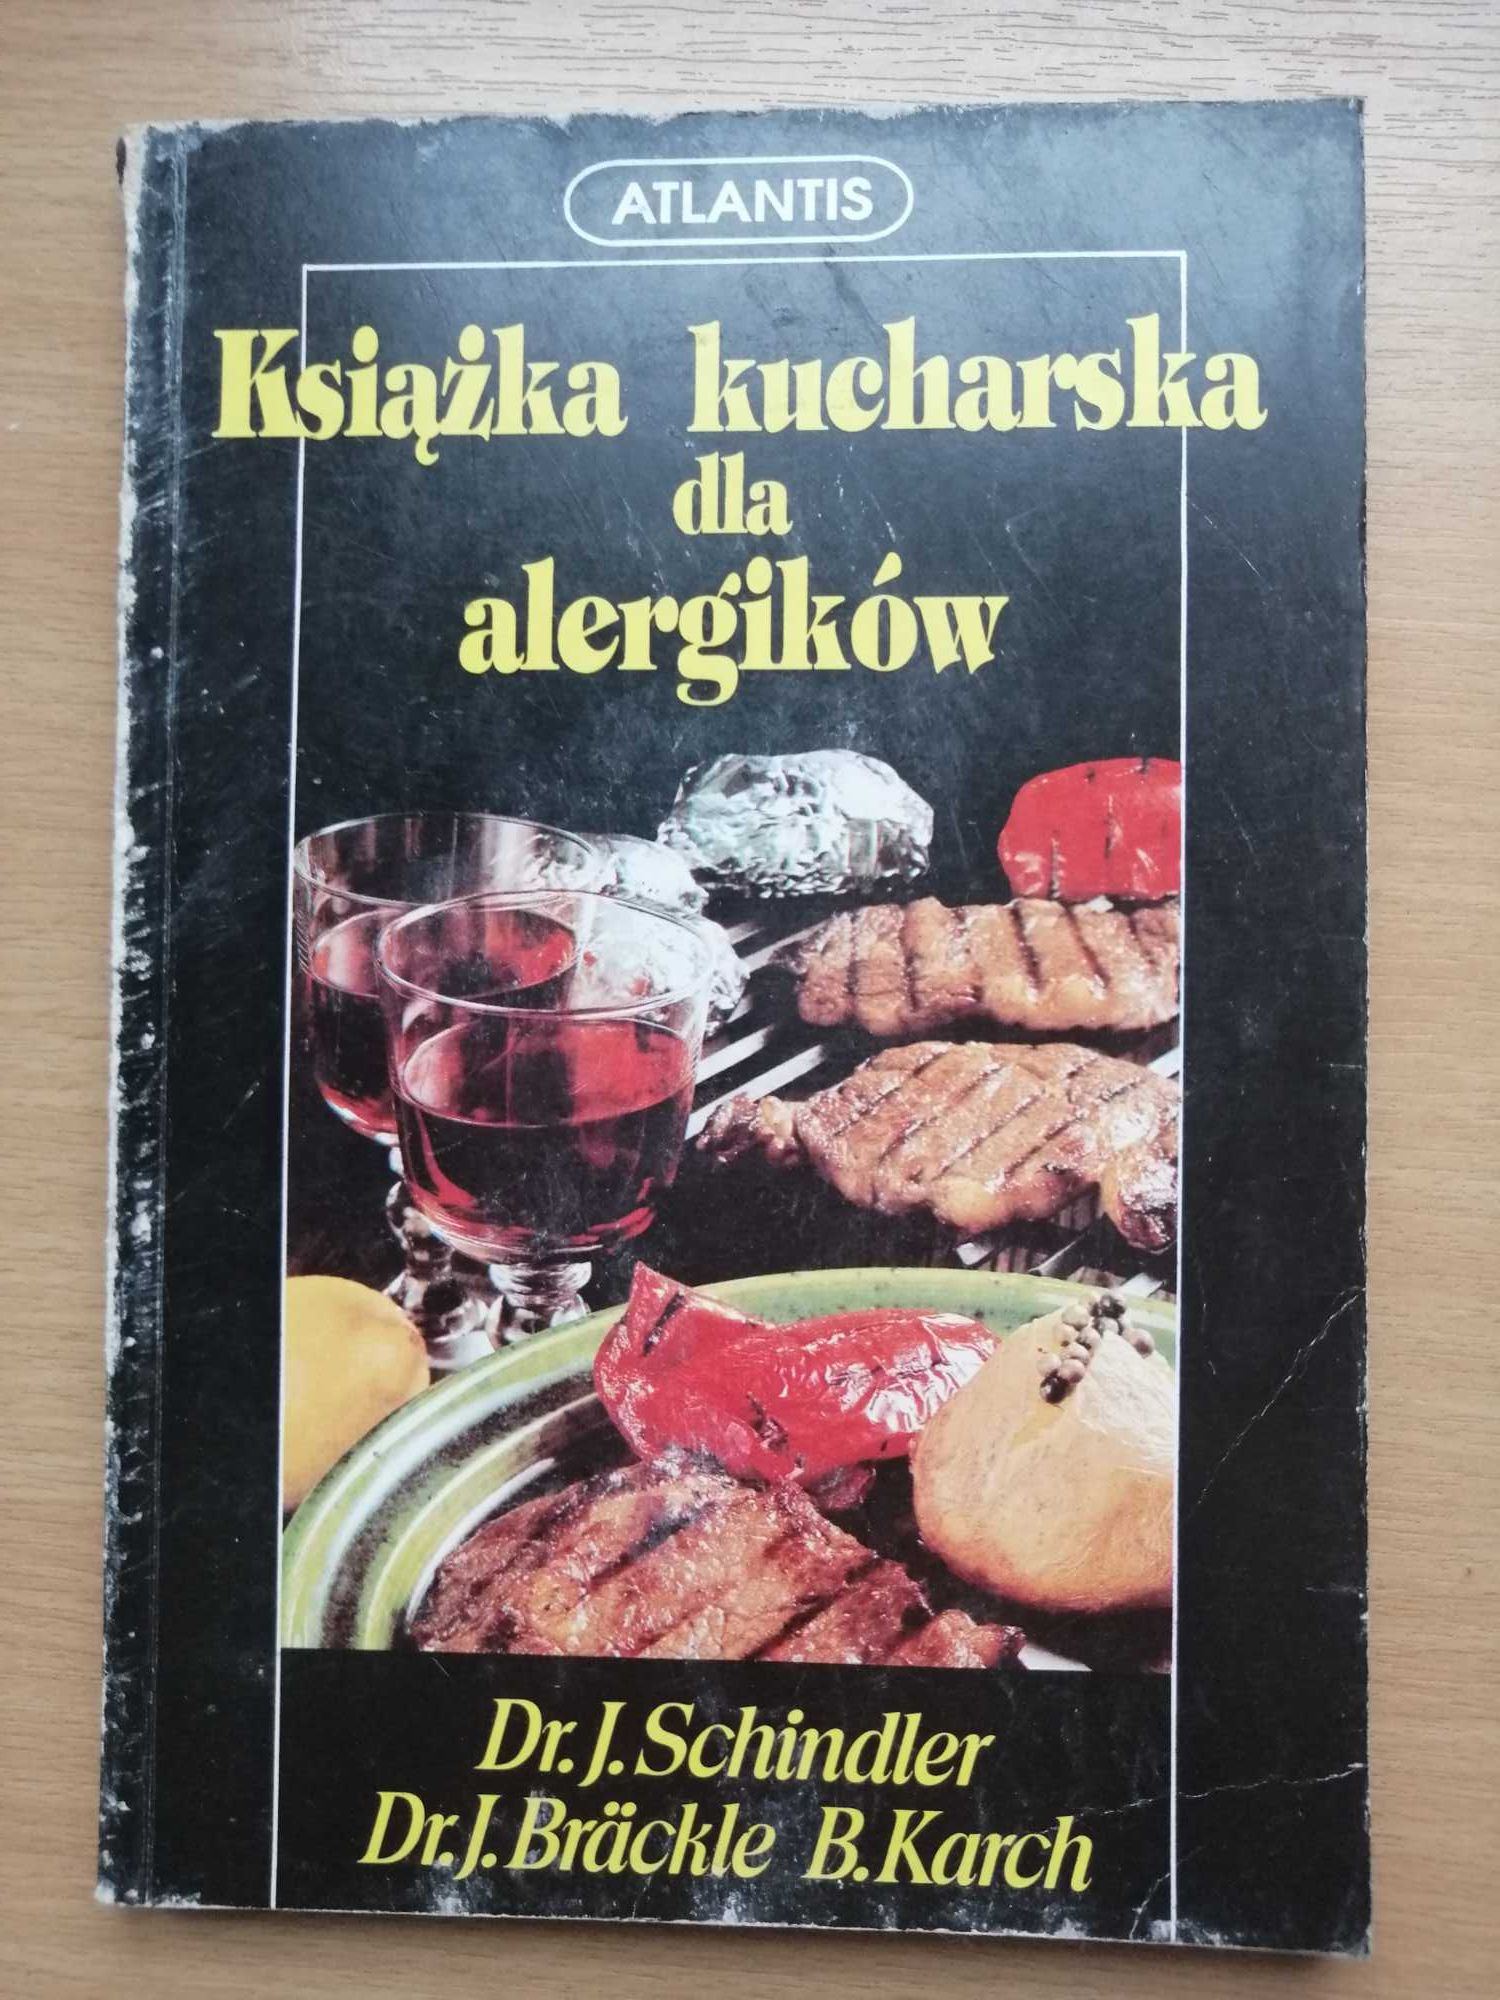 Książka kucharska dla alergików-J.Schindler,J.Brackle,B.Karch